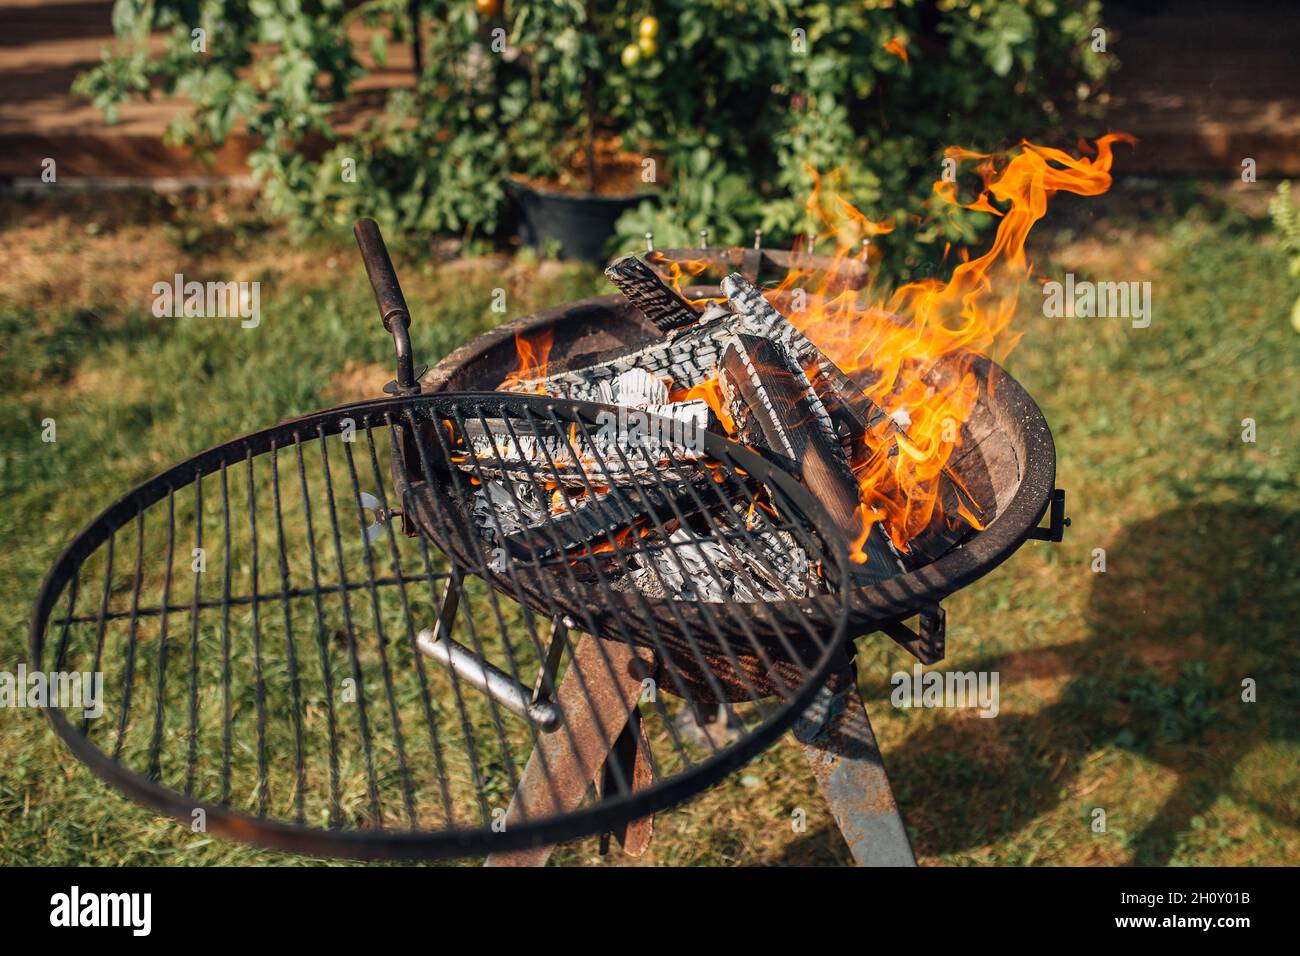 Rundes Grillrost aus Metall mit Feuer aus brennendem Holz Stockfotografie -  Alamy